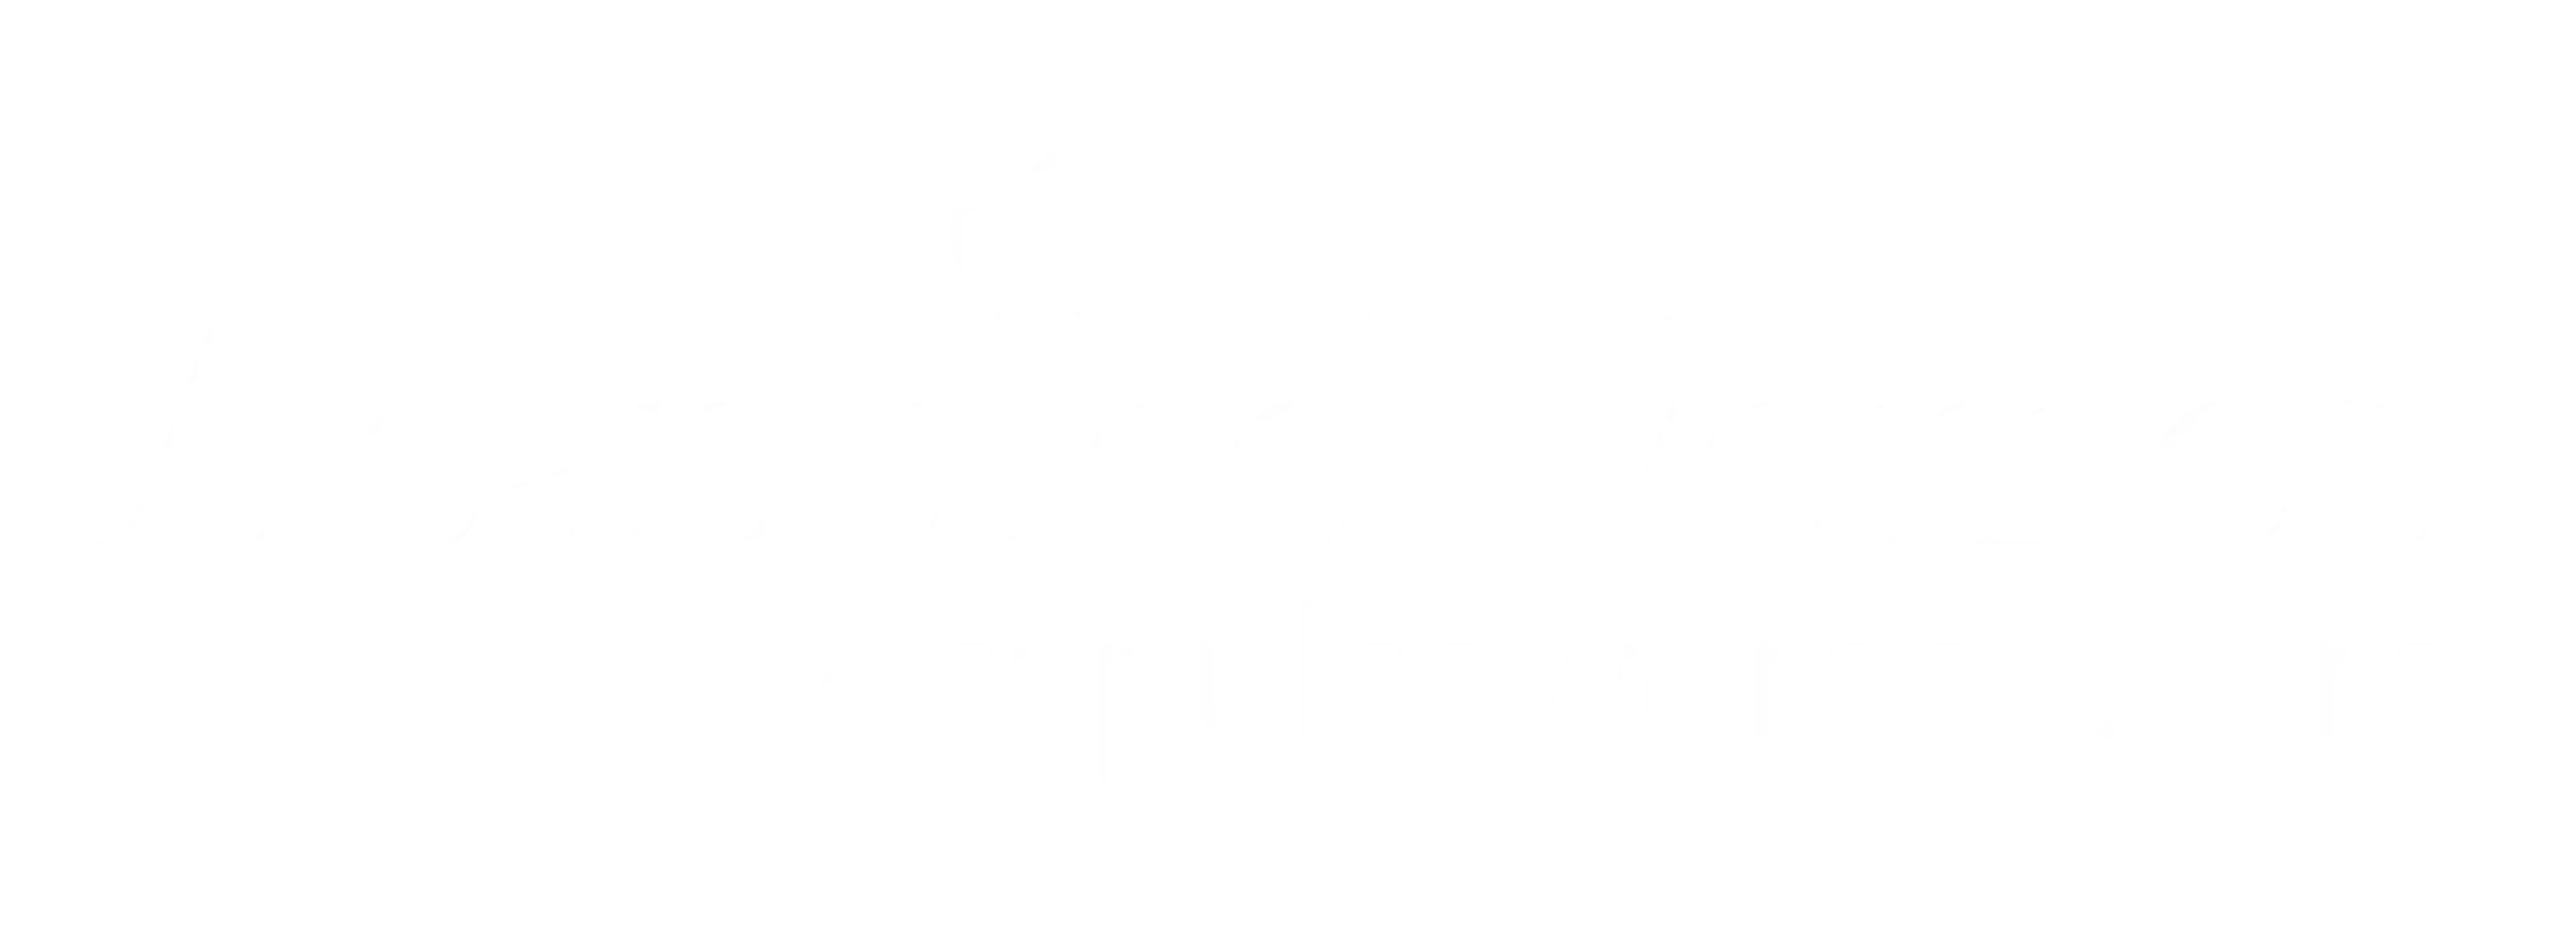 Acapulco Women logo white version